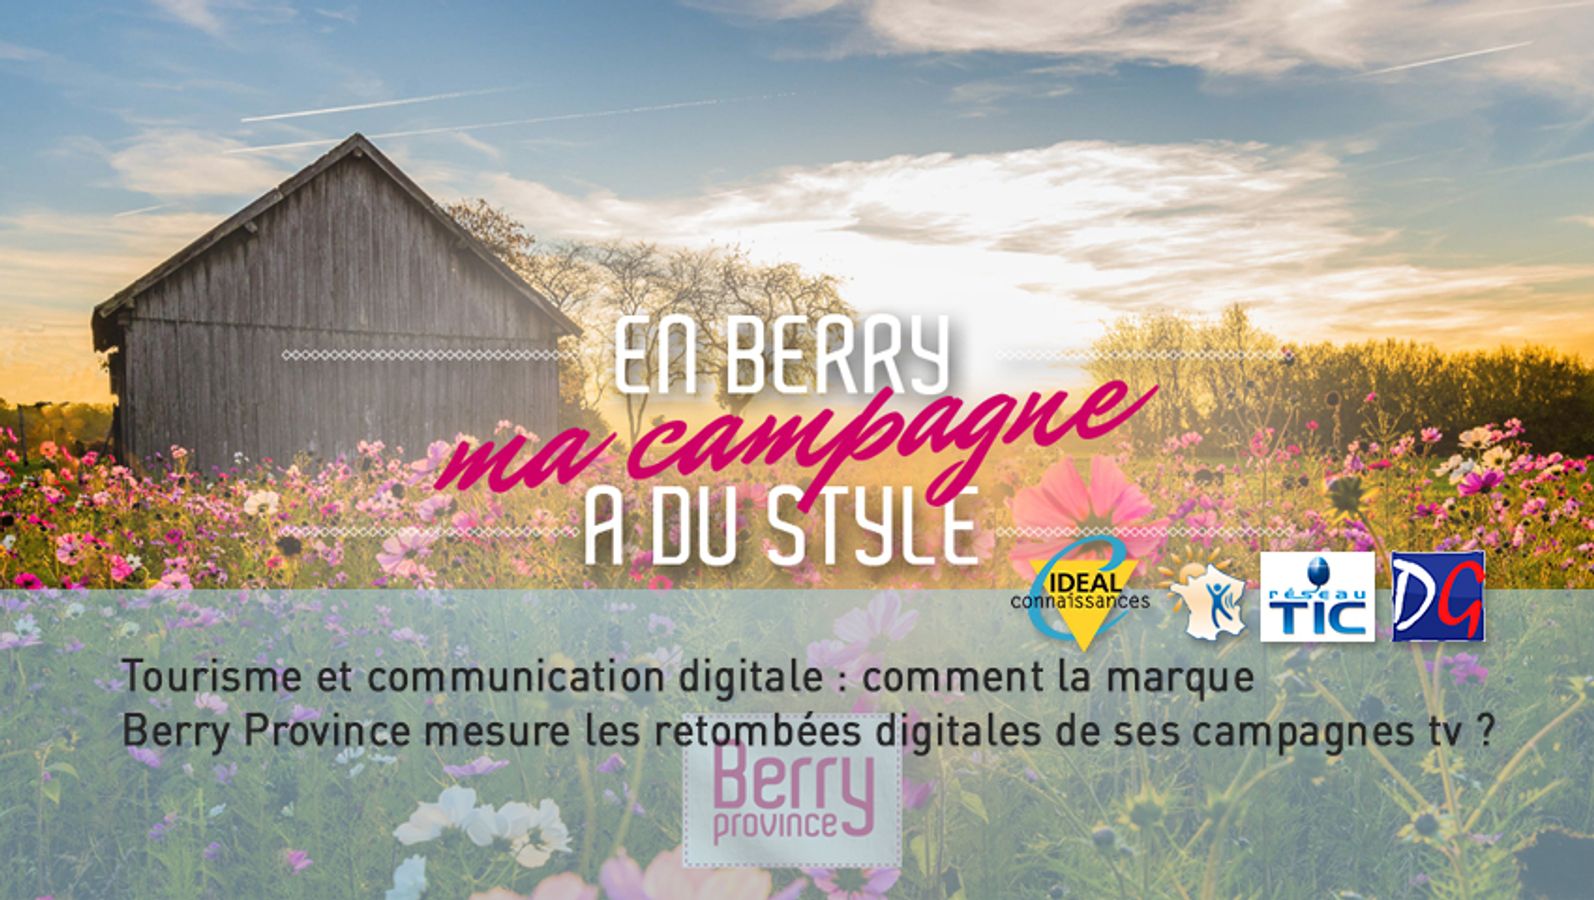 Tourisme et communication : comment la marque Berry Province mesure les retombées digitales de ses campagnes tv.